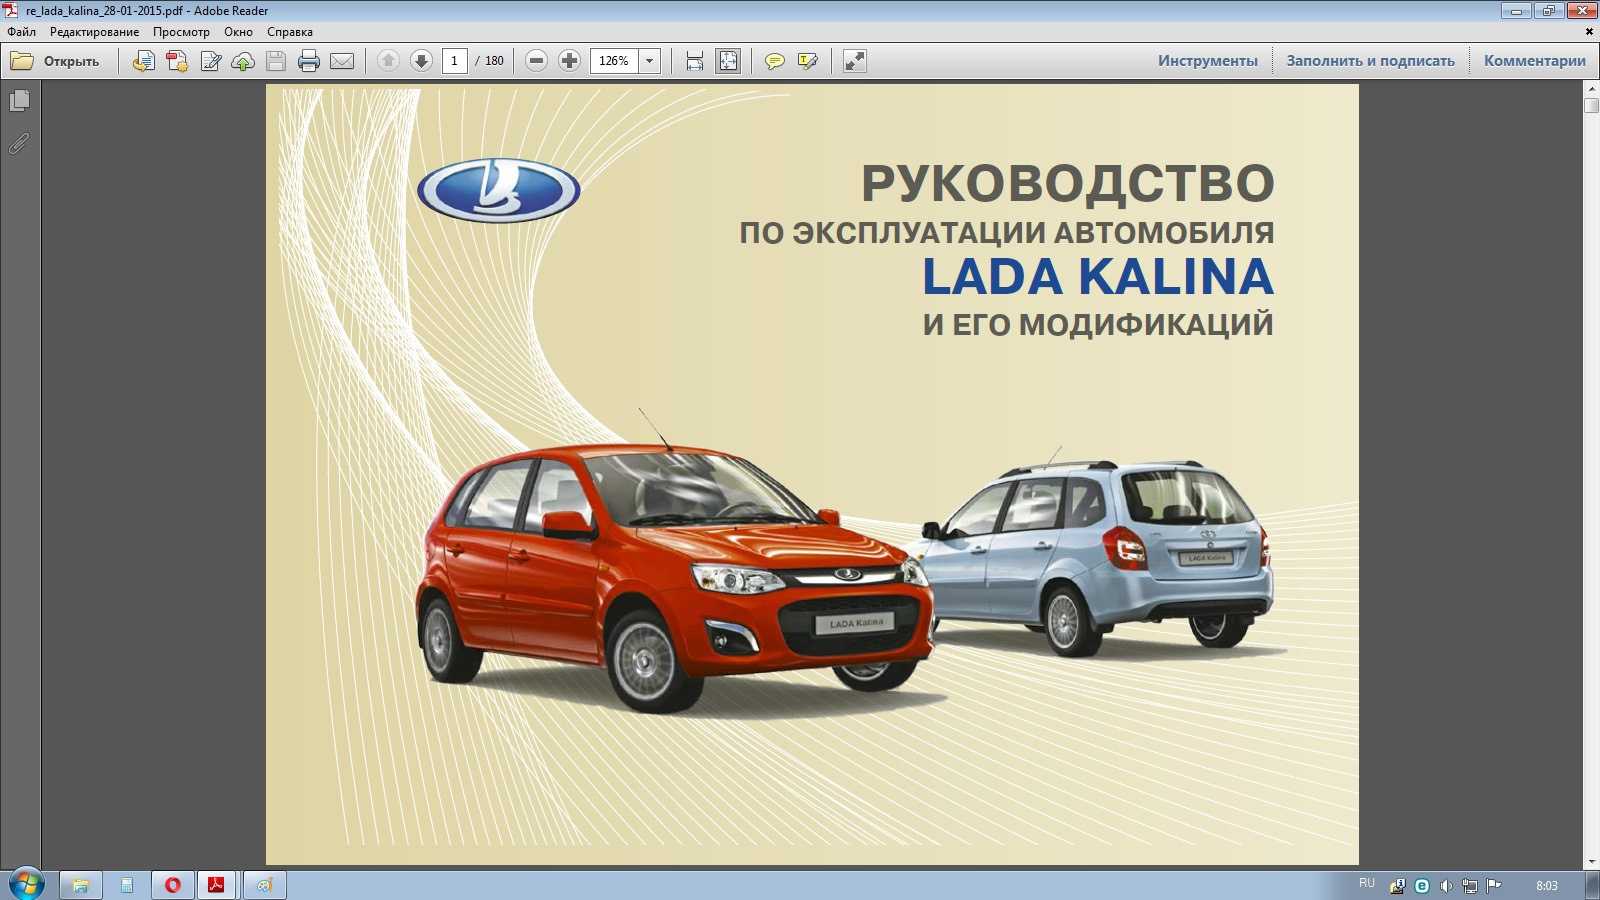 Lada kalina универсал - запись на то, скачать руководство по эксплуатации - томь-лада: дилер lada в г. томск